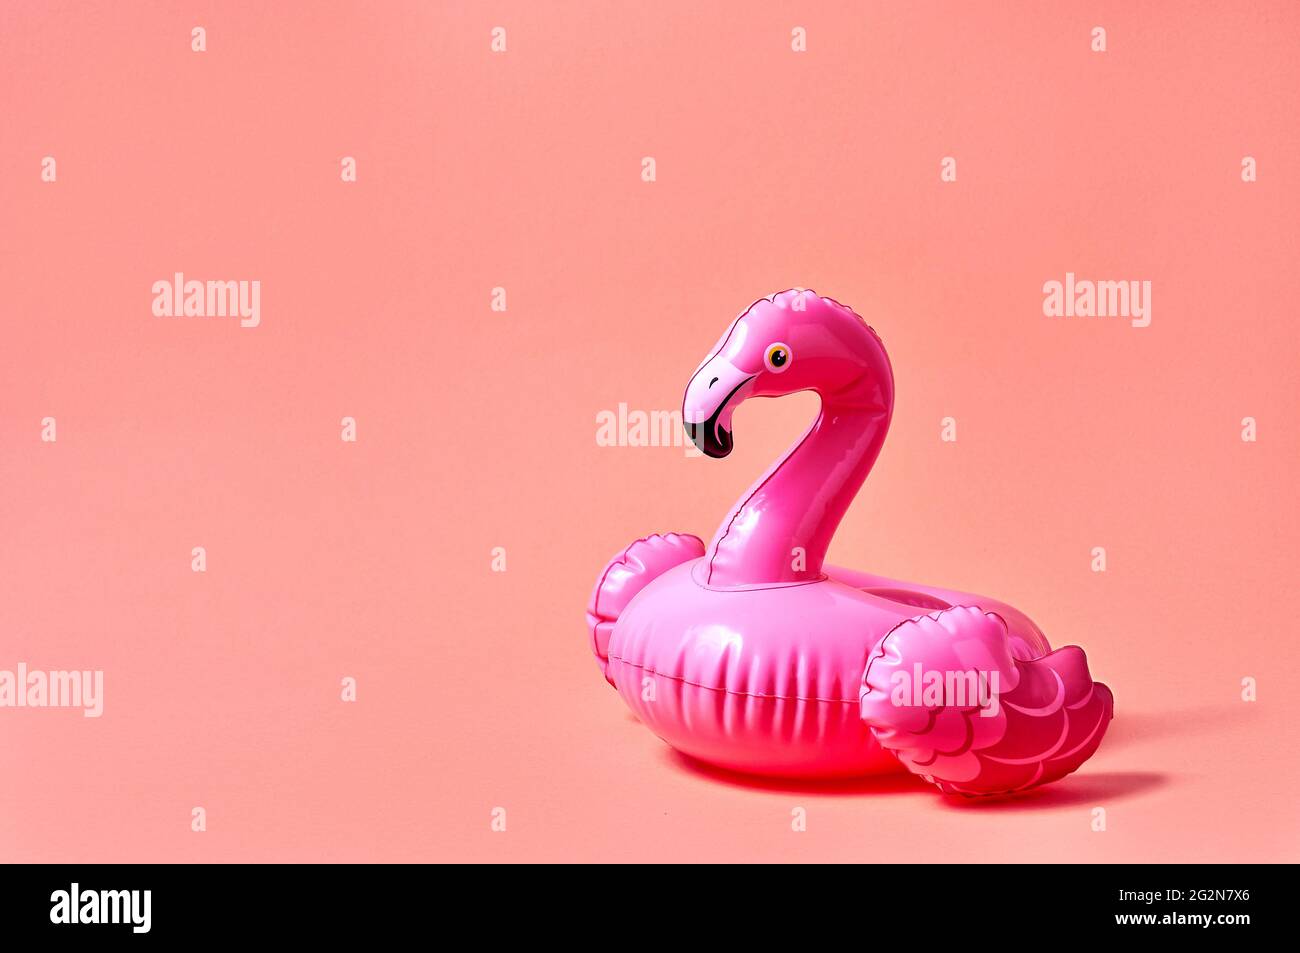 Jouet gonflable rose flamant sur fond rose. Concept minimaliste créatif. Banque D'Images